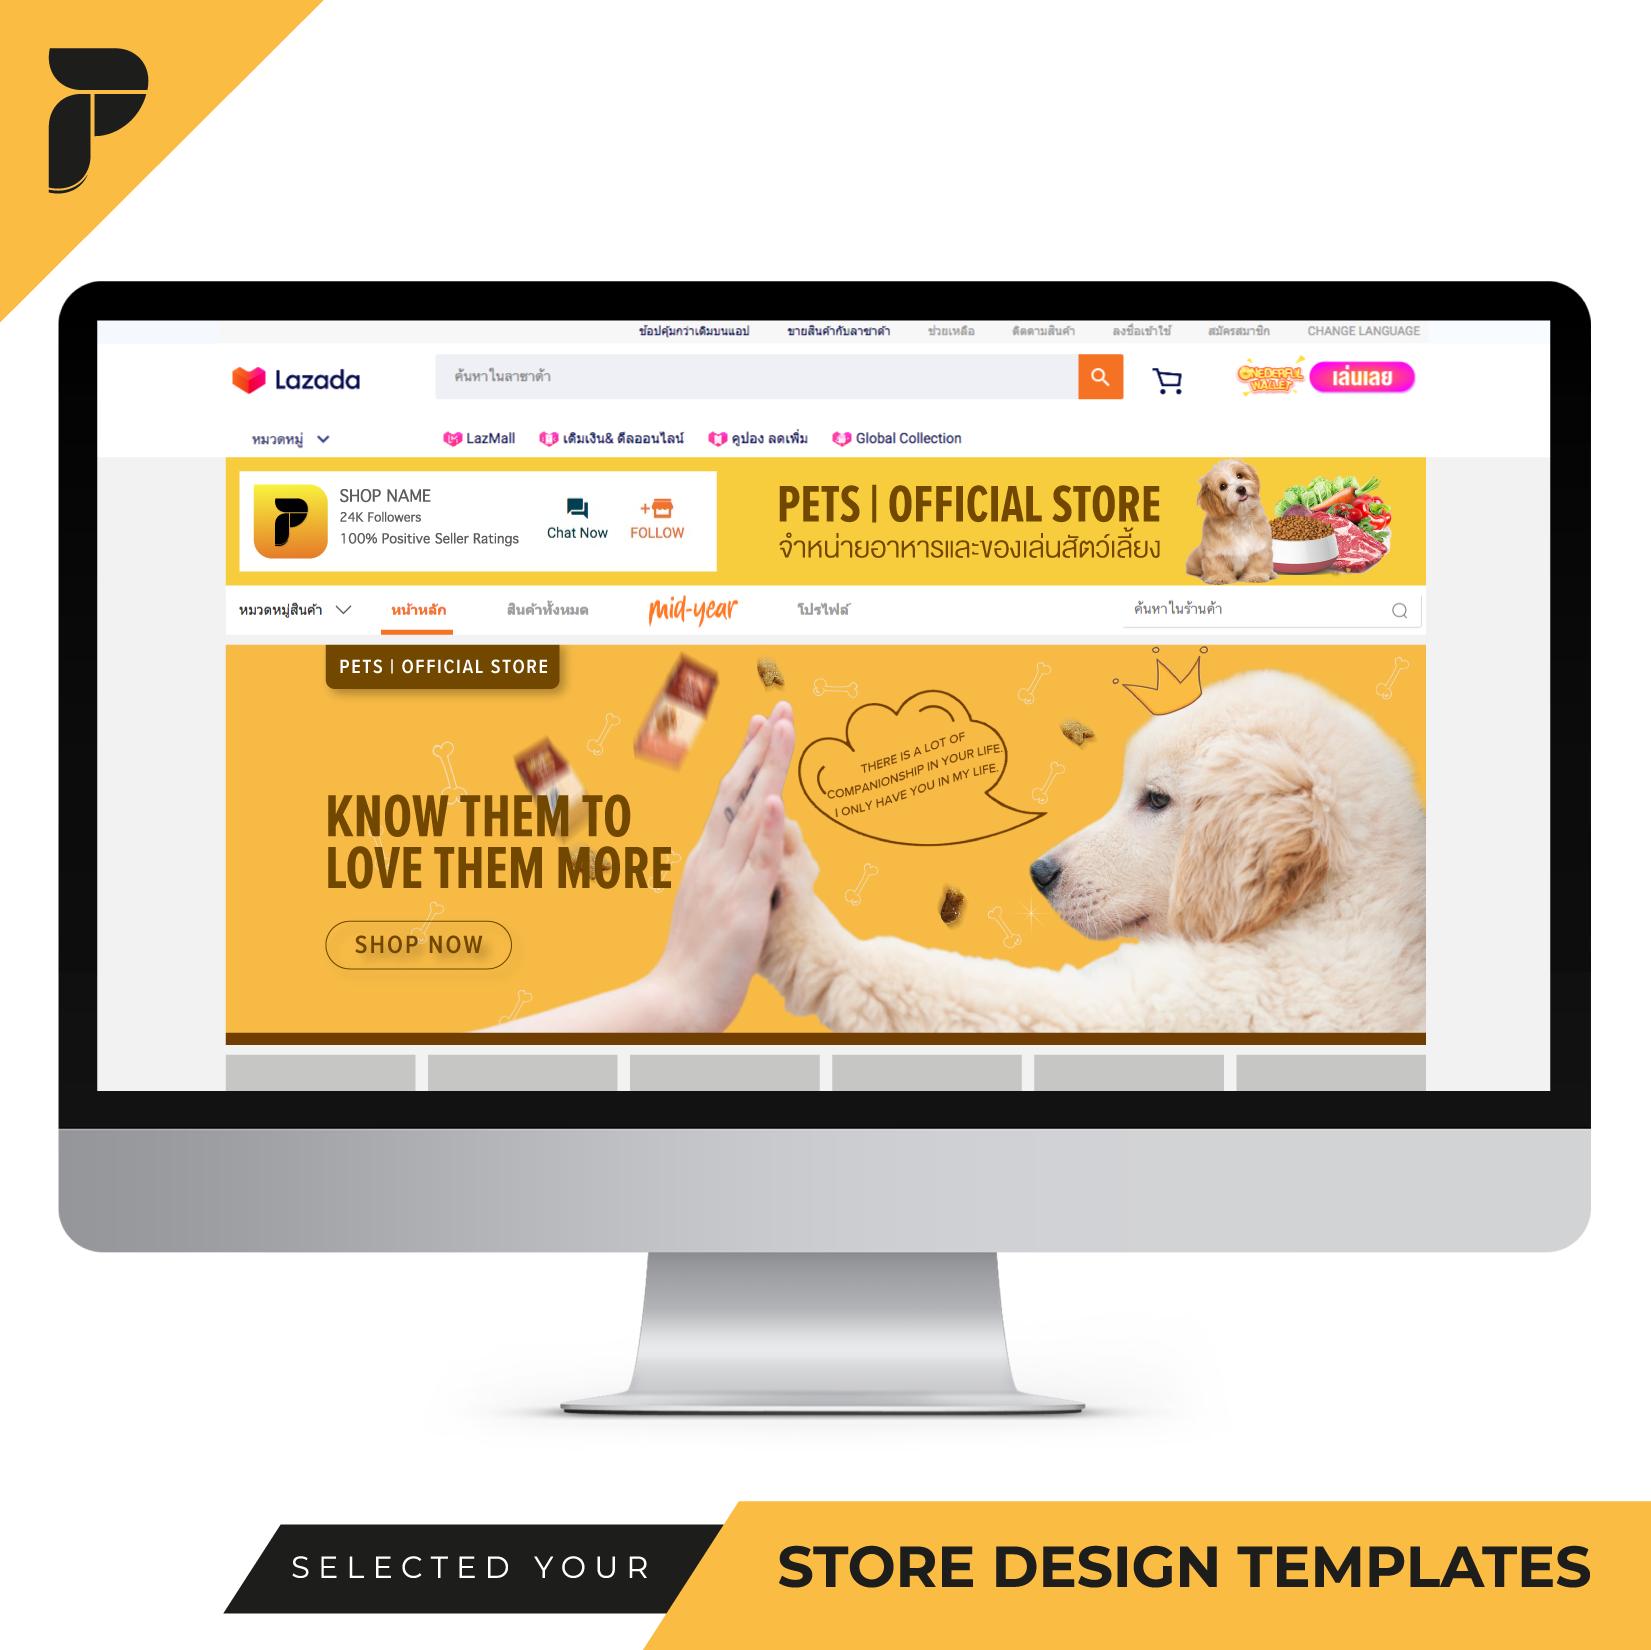 Store Design Template Banner Ready-to-Work by PathGraphic Studio - Pets แบนเนอร์ตกแต่งร้าน แบนเนอร์สำเร็จรูป สำหรับตกแต่งหน้าร้านค้าออนไลน์